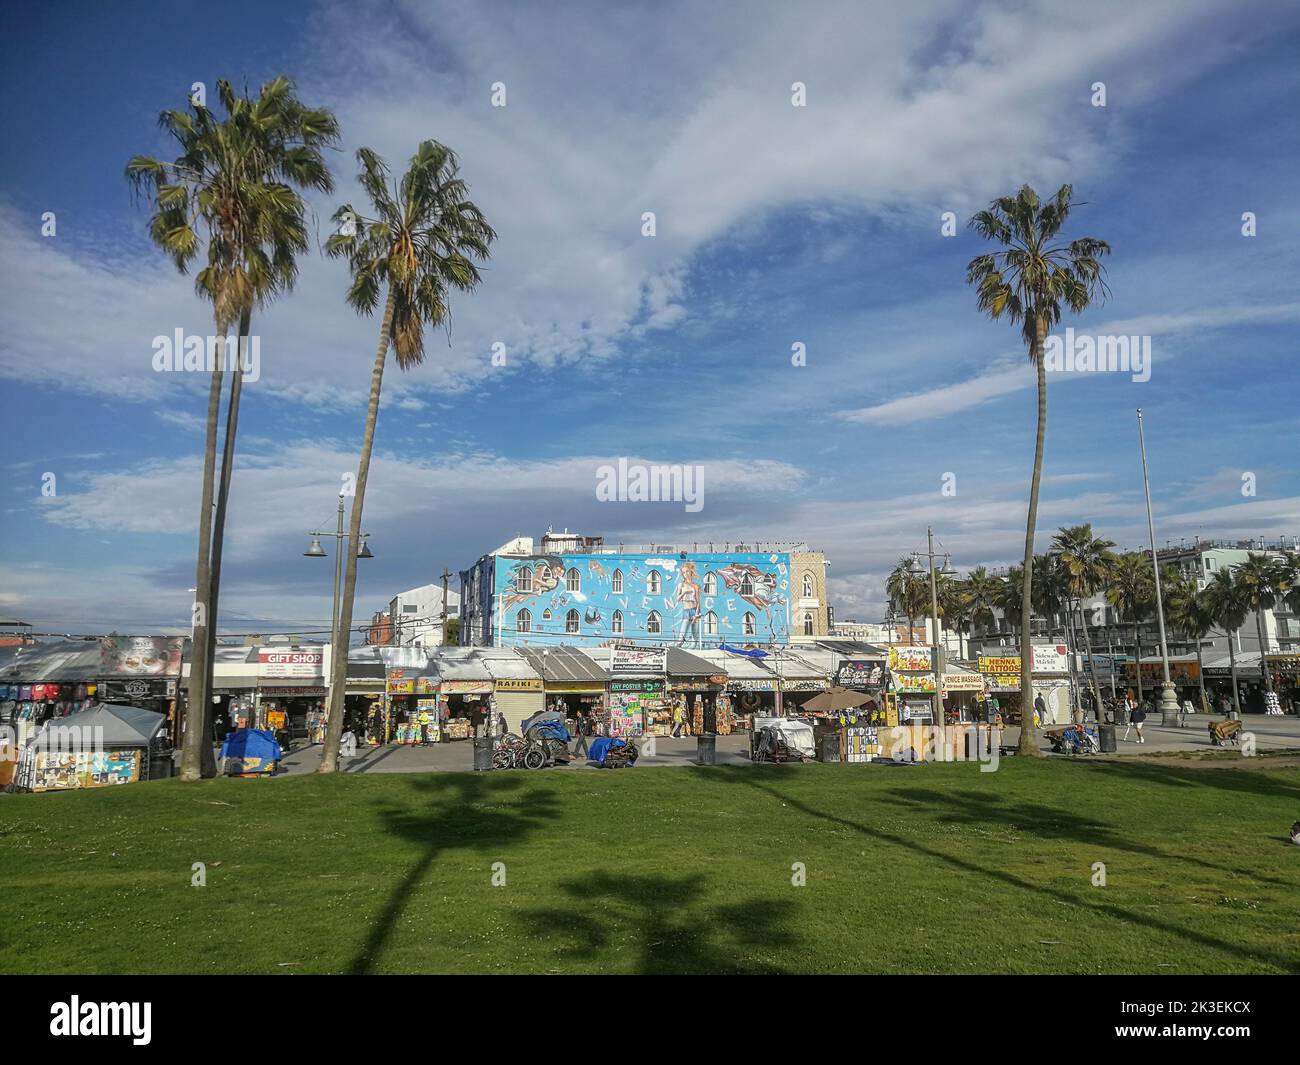 Venice, USA - March 5, 2019: scenic beach promenade in Venice, USA. Stock Photo